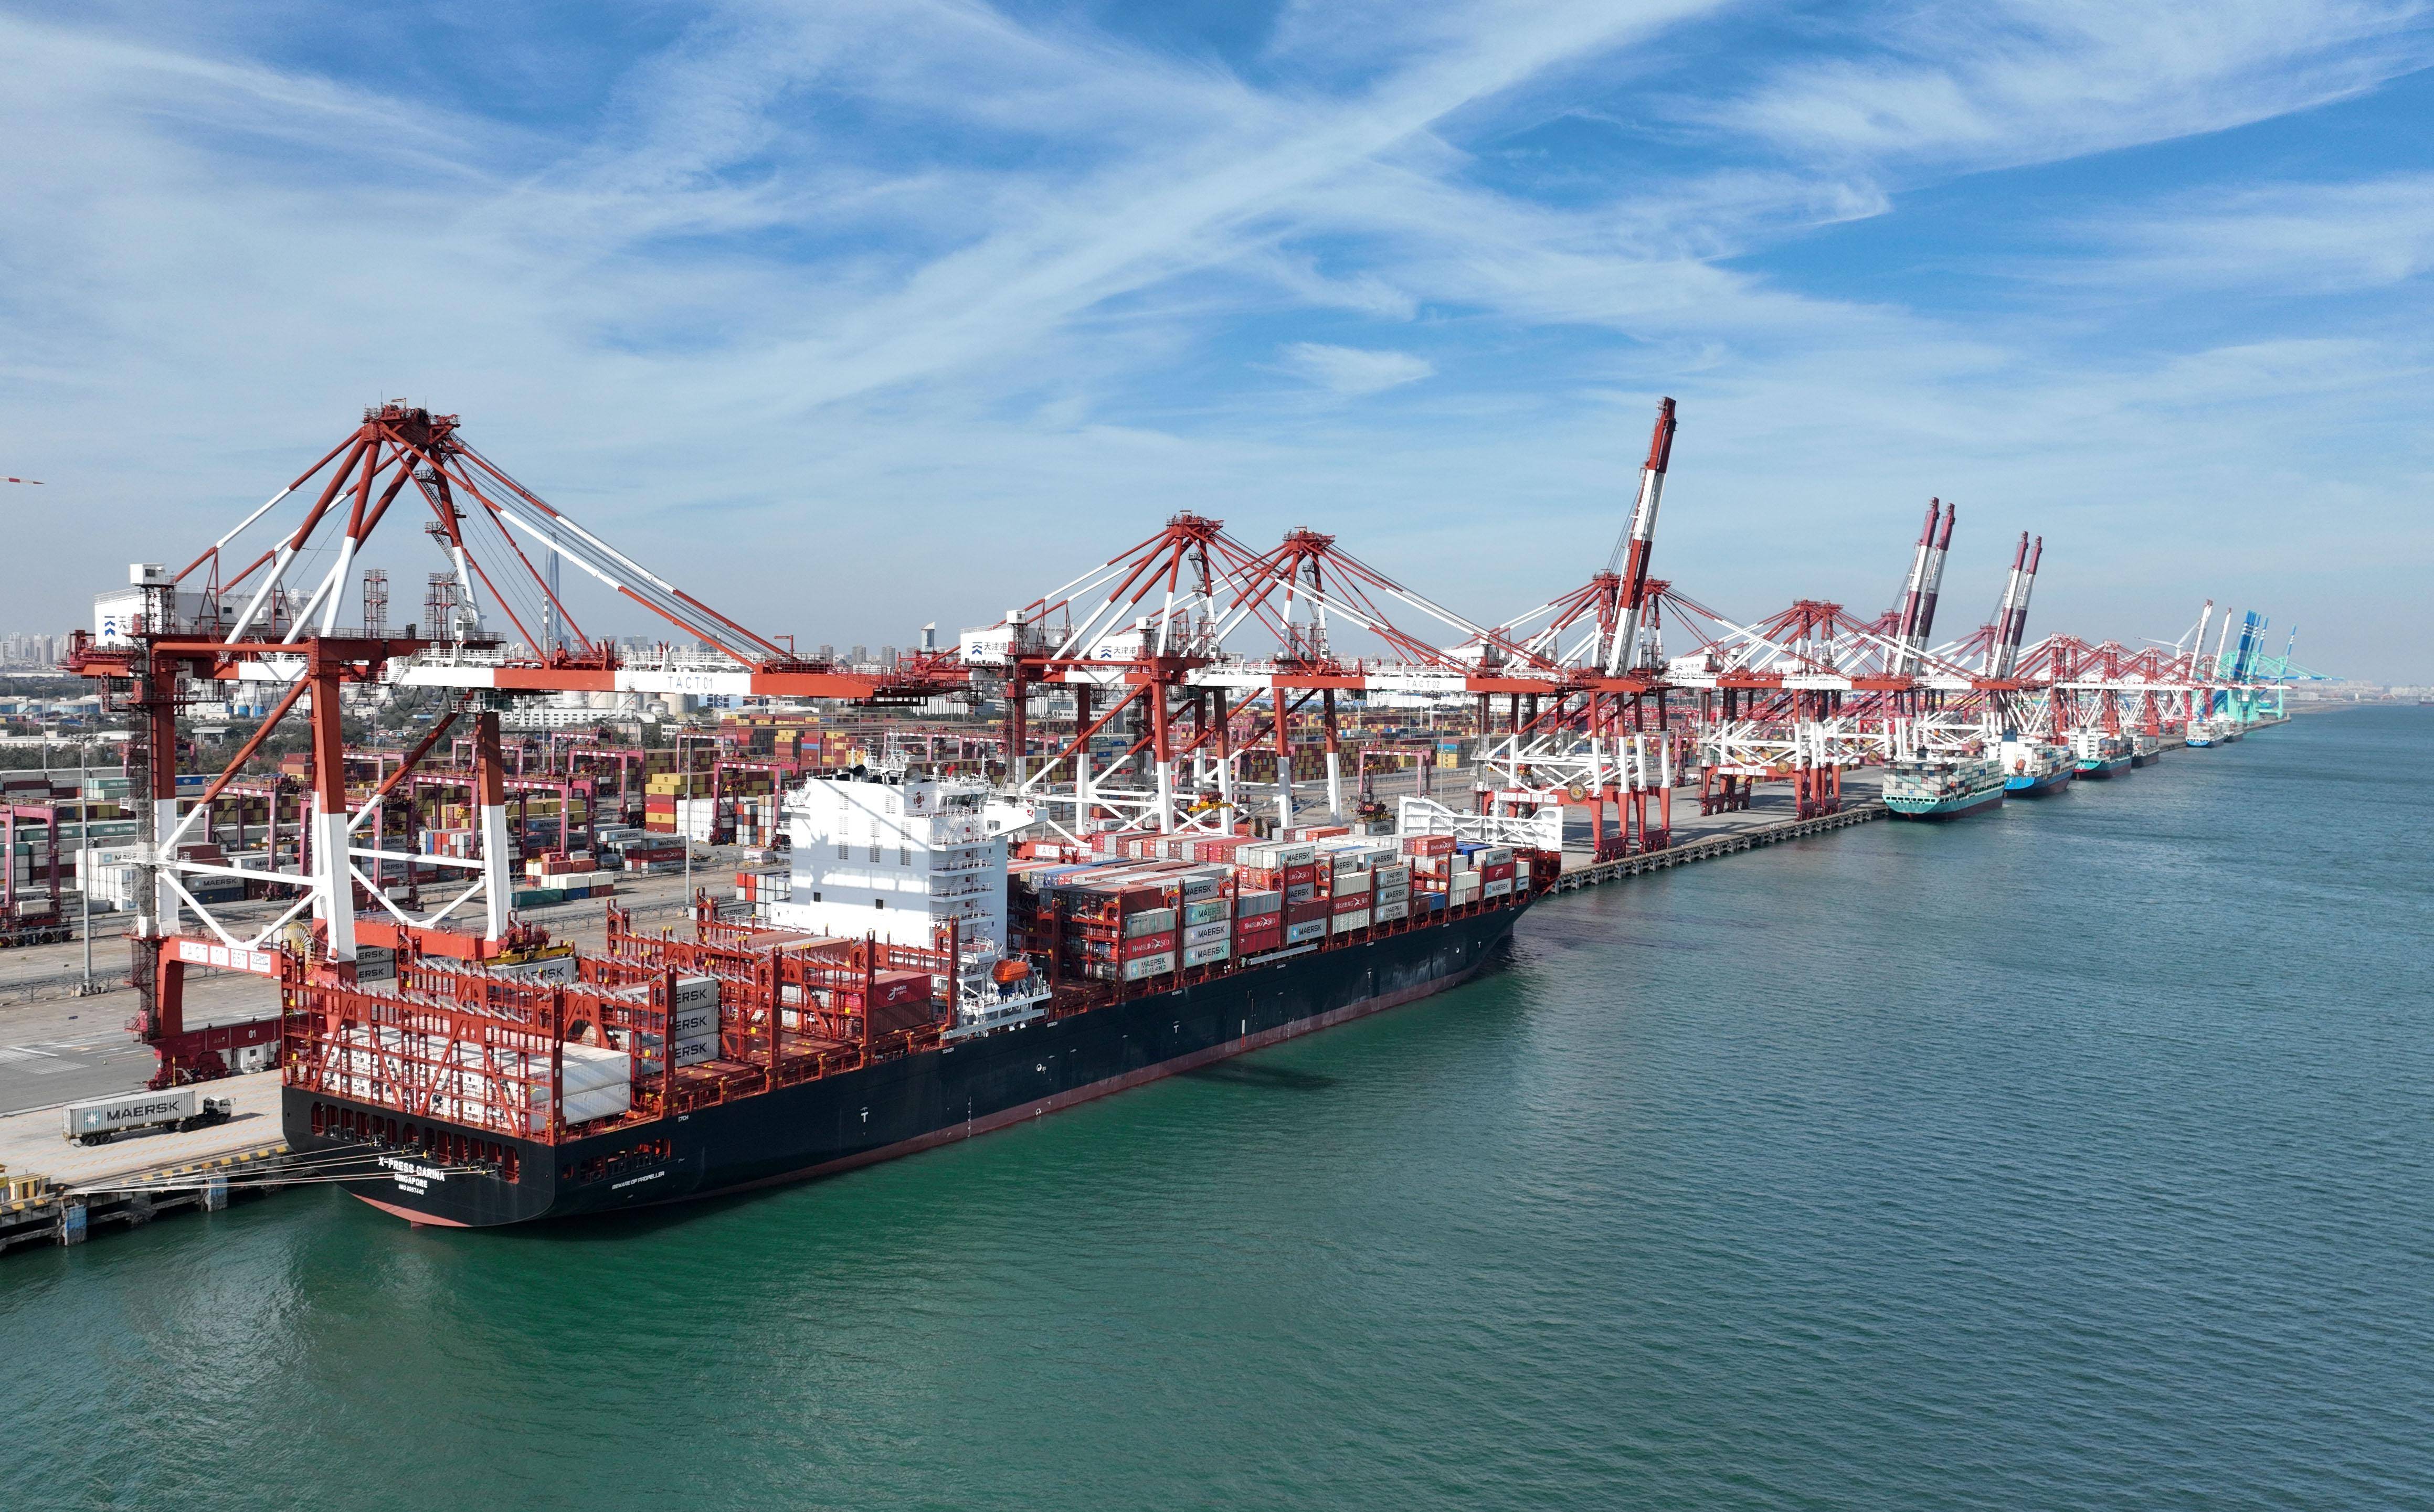 集装箱货轮停靠在天津港欧亚国际集装箱码头(11月13日摄,无人机照片)